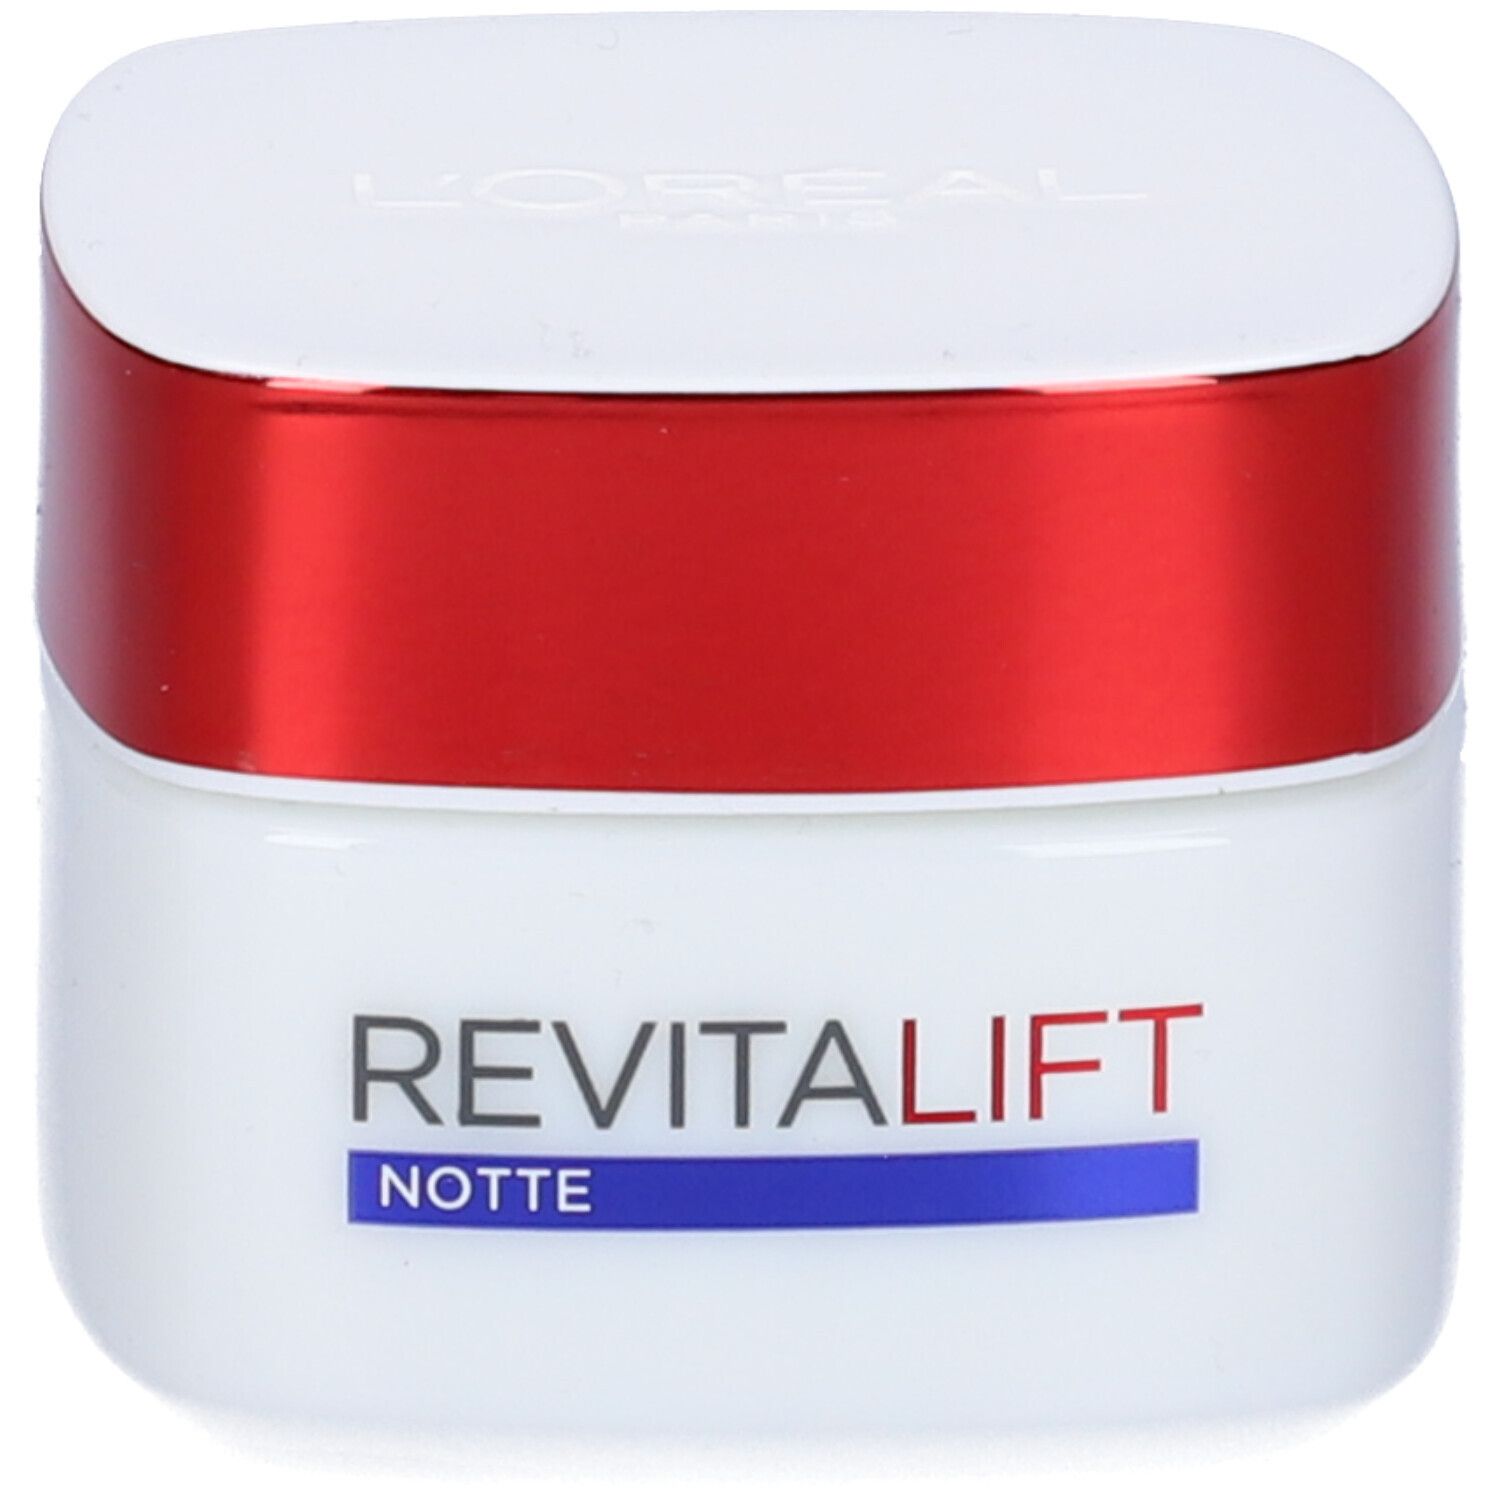 Image of L'Oréal Paris Revitalift Notte Trattamento Notte Idratante Multi-Lift Anti-rughe Extra Rassodante con Pro-Retinolo ed Elasti-peptidi, 50 ml